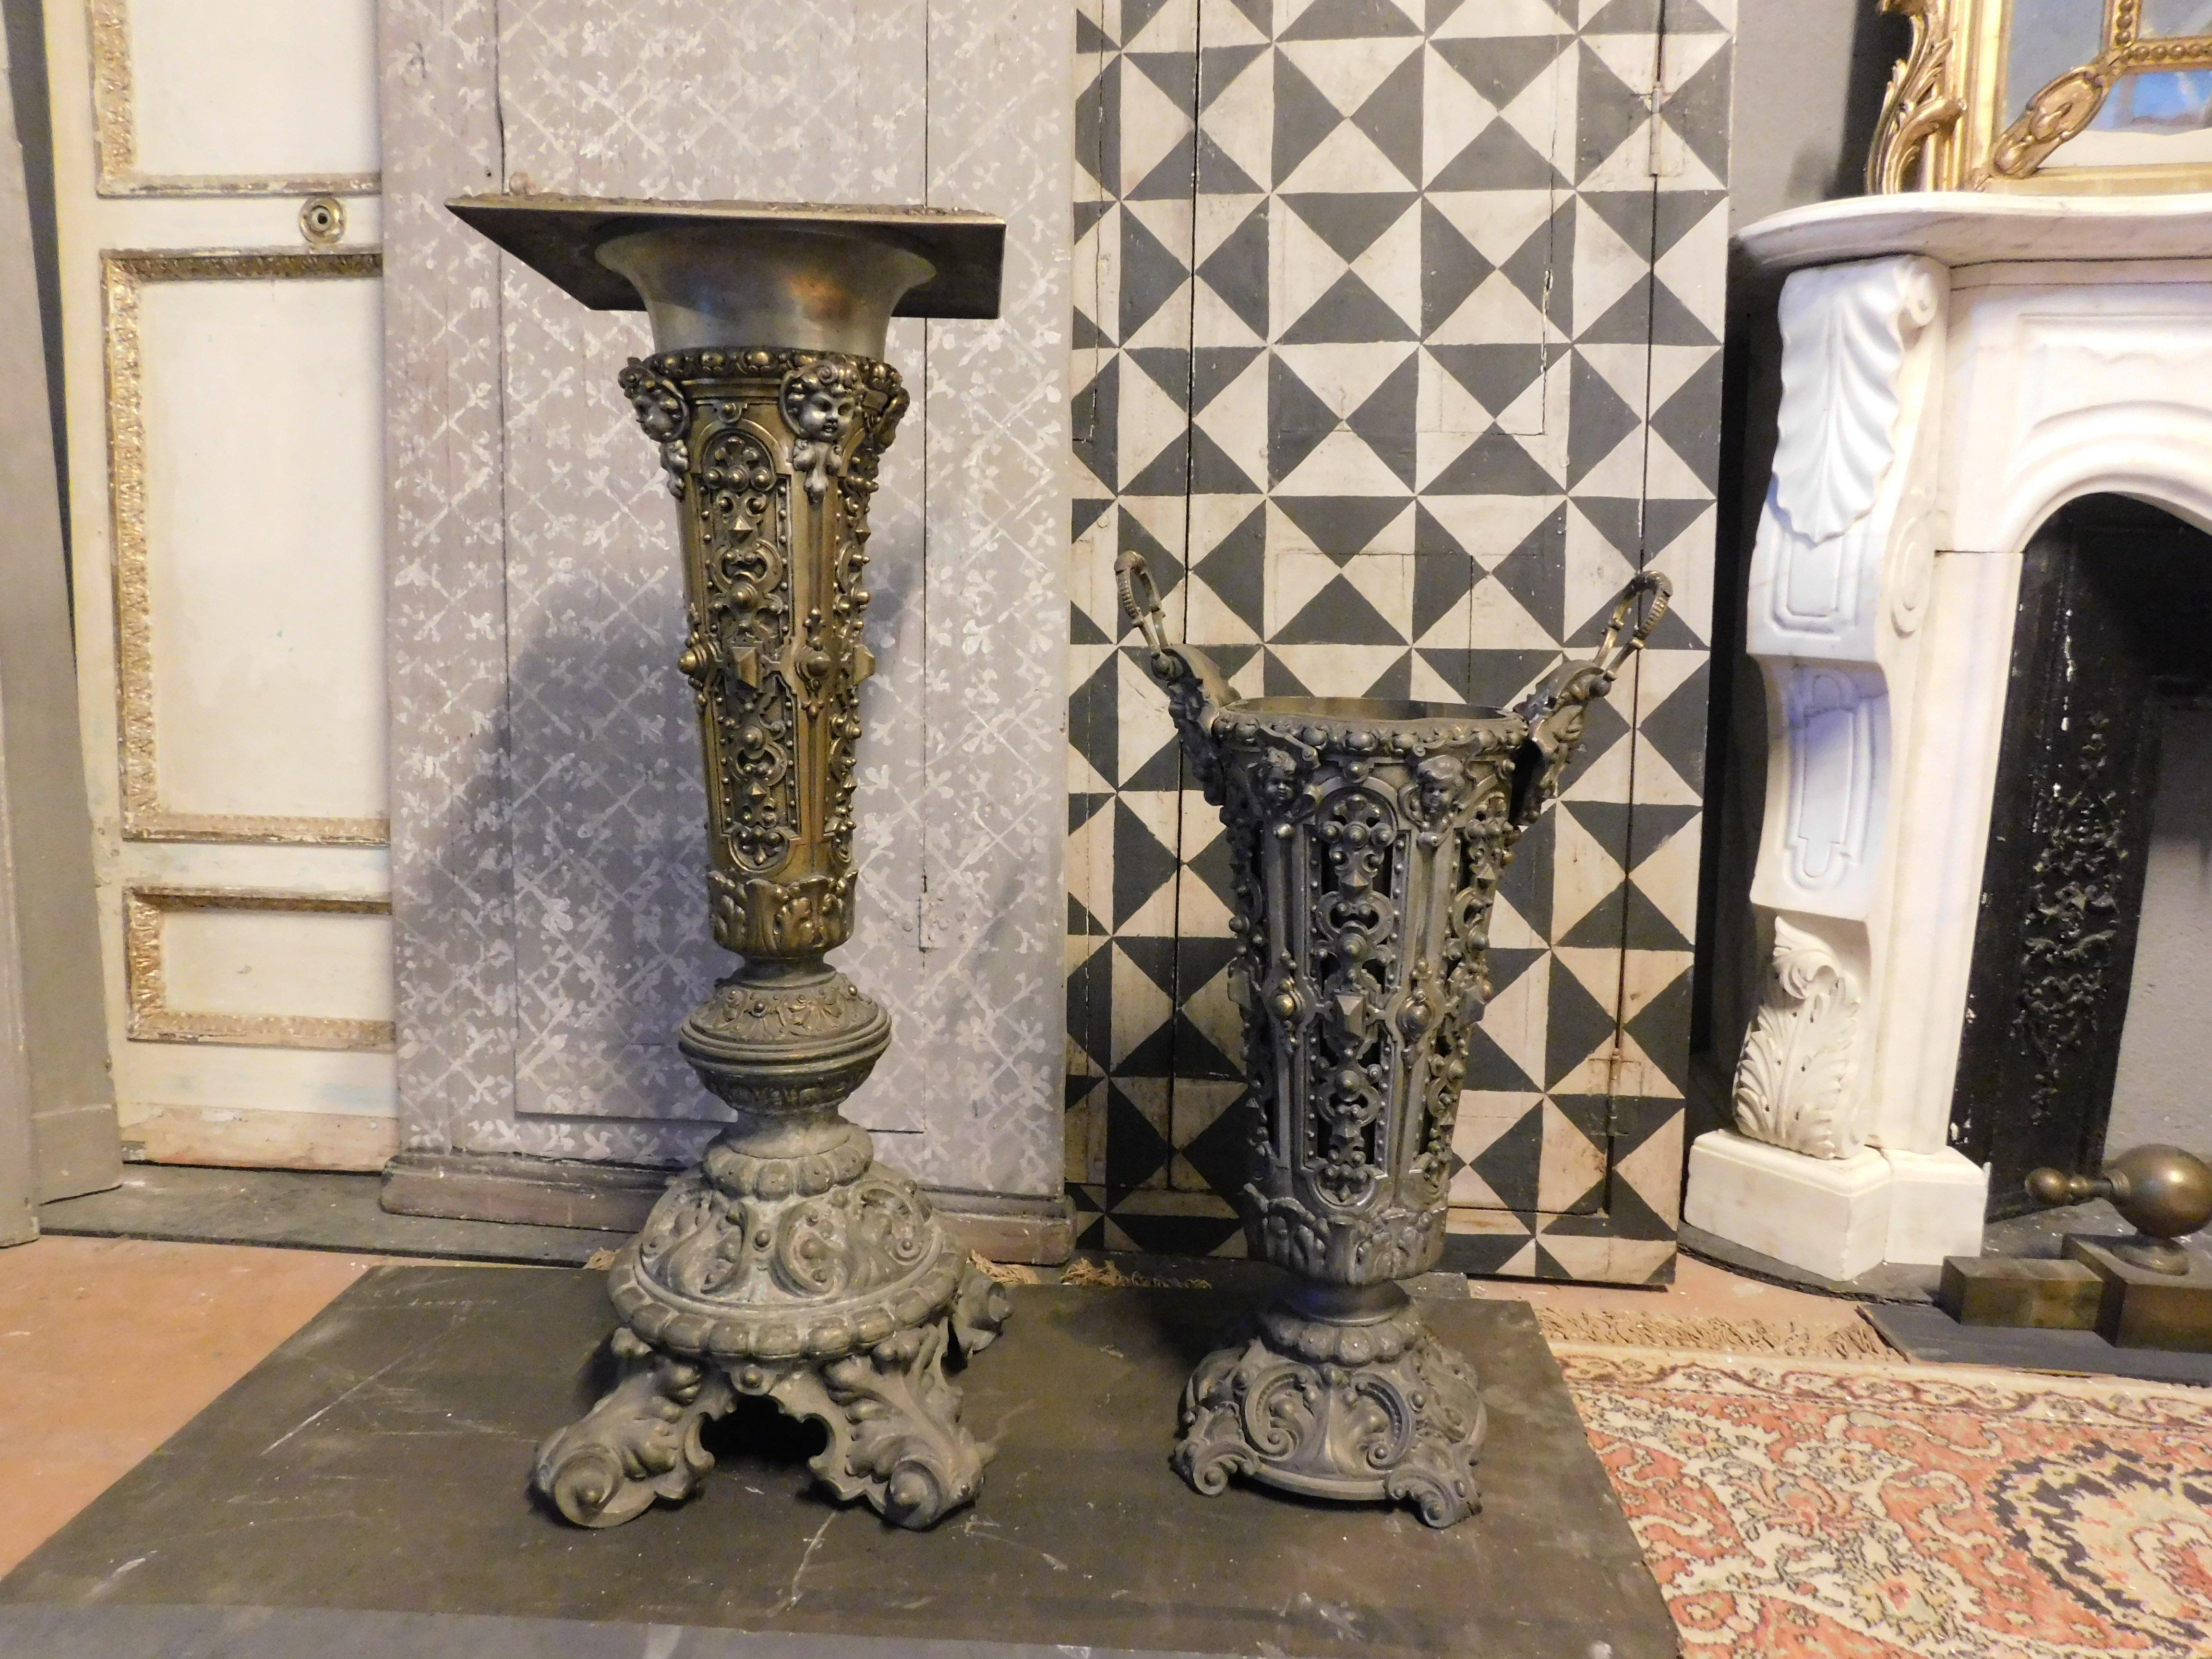 Vintage-Set aus Säulenvasenhalter und Vasenschirmständer, aus messingartigem Metall, reich geschnitzt und vergoldet, hergestellt in Italien in den frühen 1900er Jahren.
Auf verschiedene Weise verwendbar, sowohl getrennt als Säule und Schirmständer,